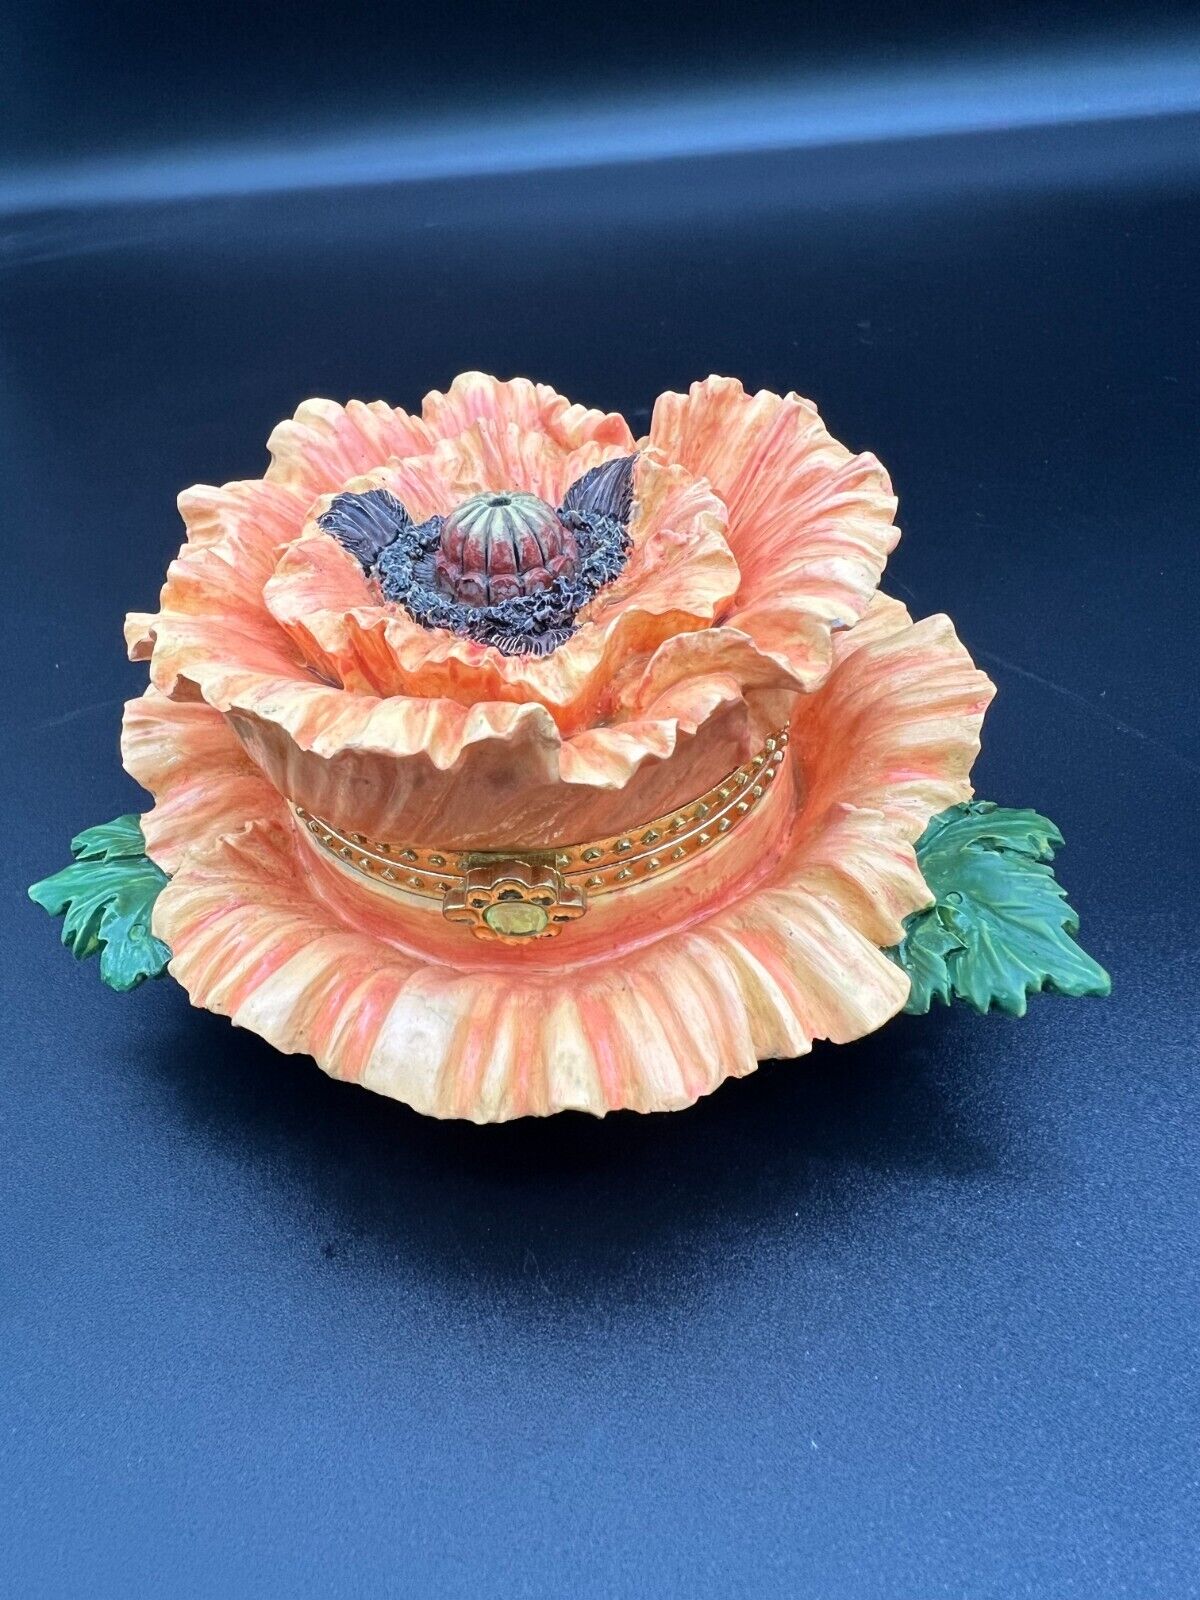 Orange Oriental Poppy Flower With Green Leaf Design Trinket Box